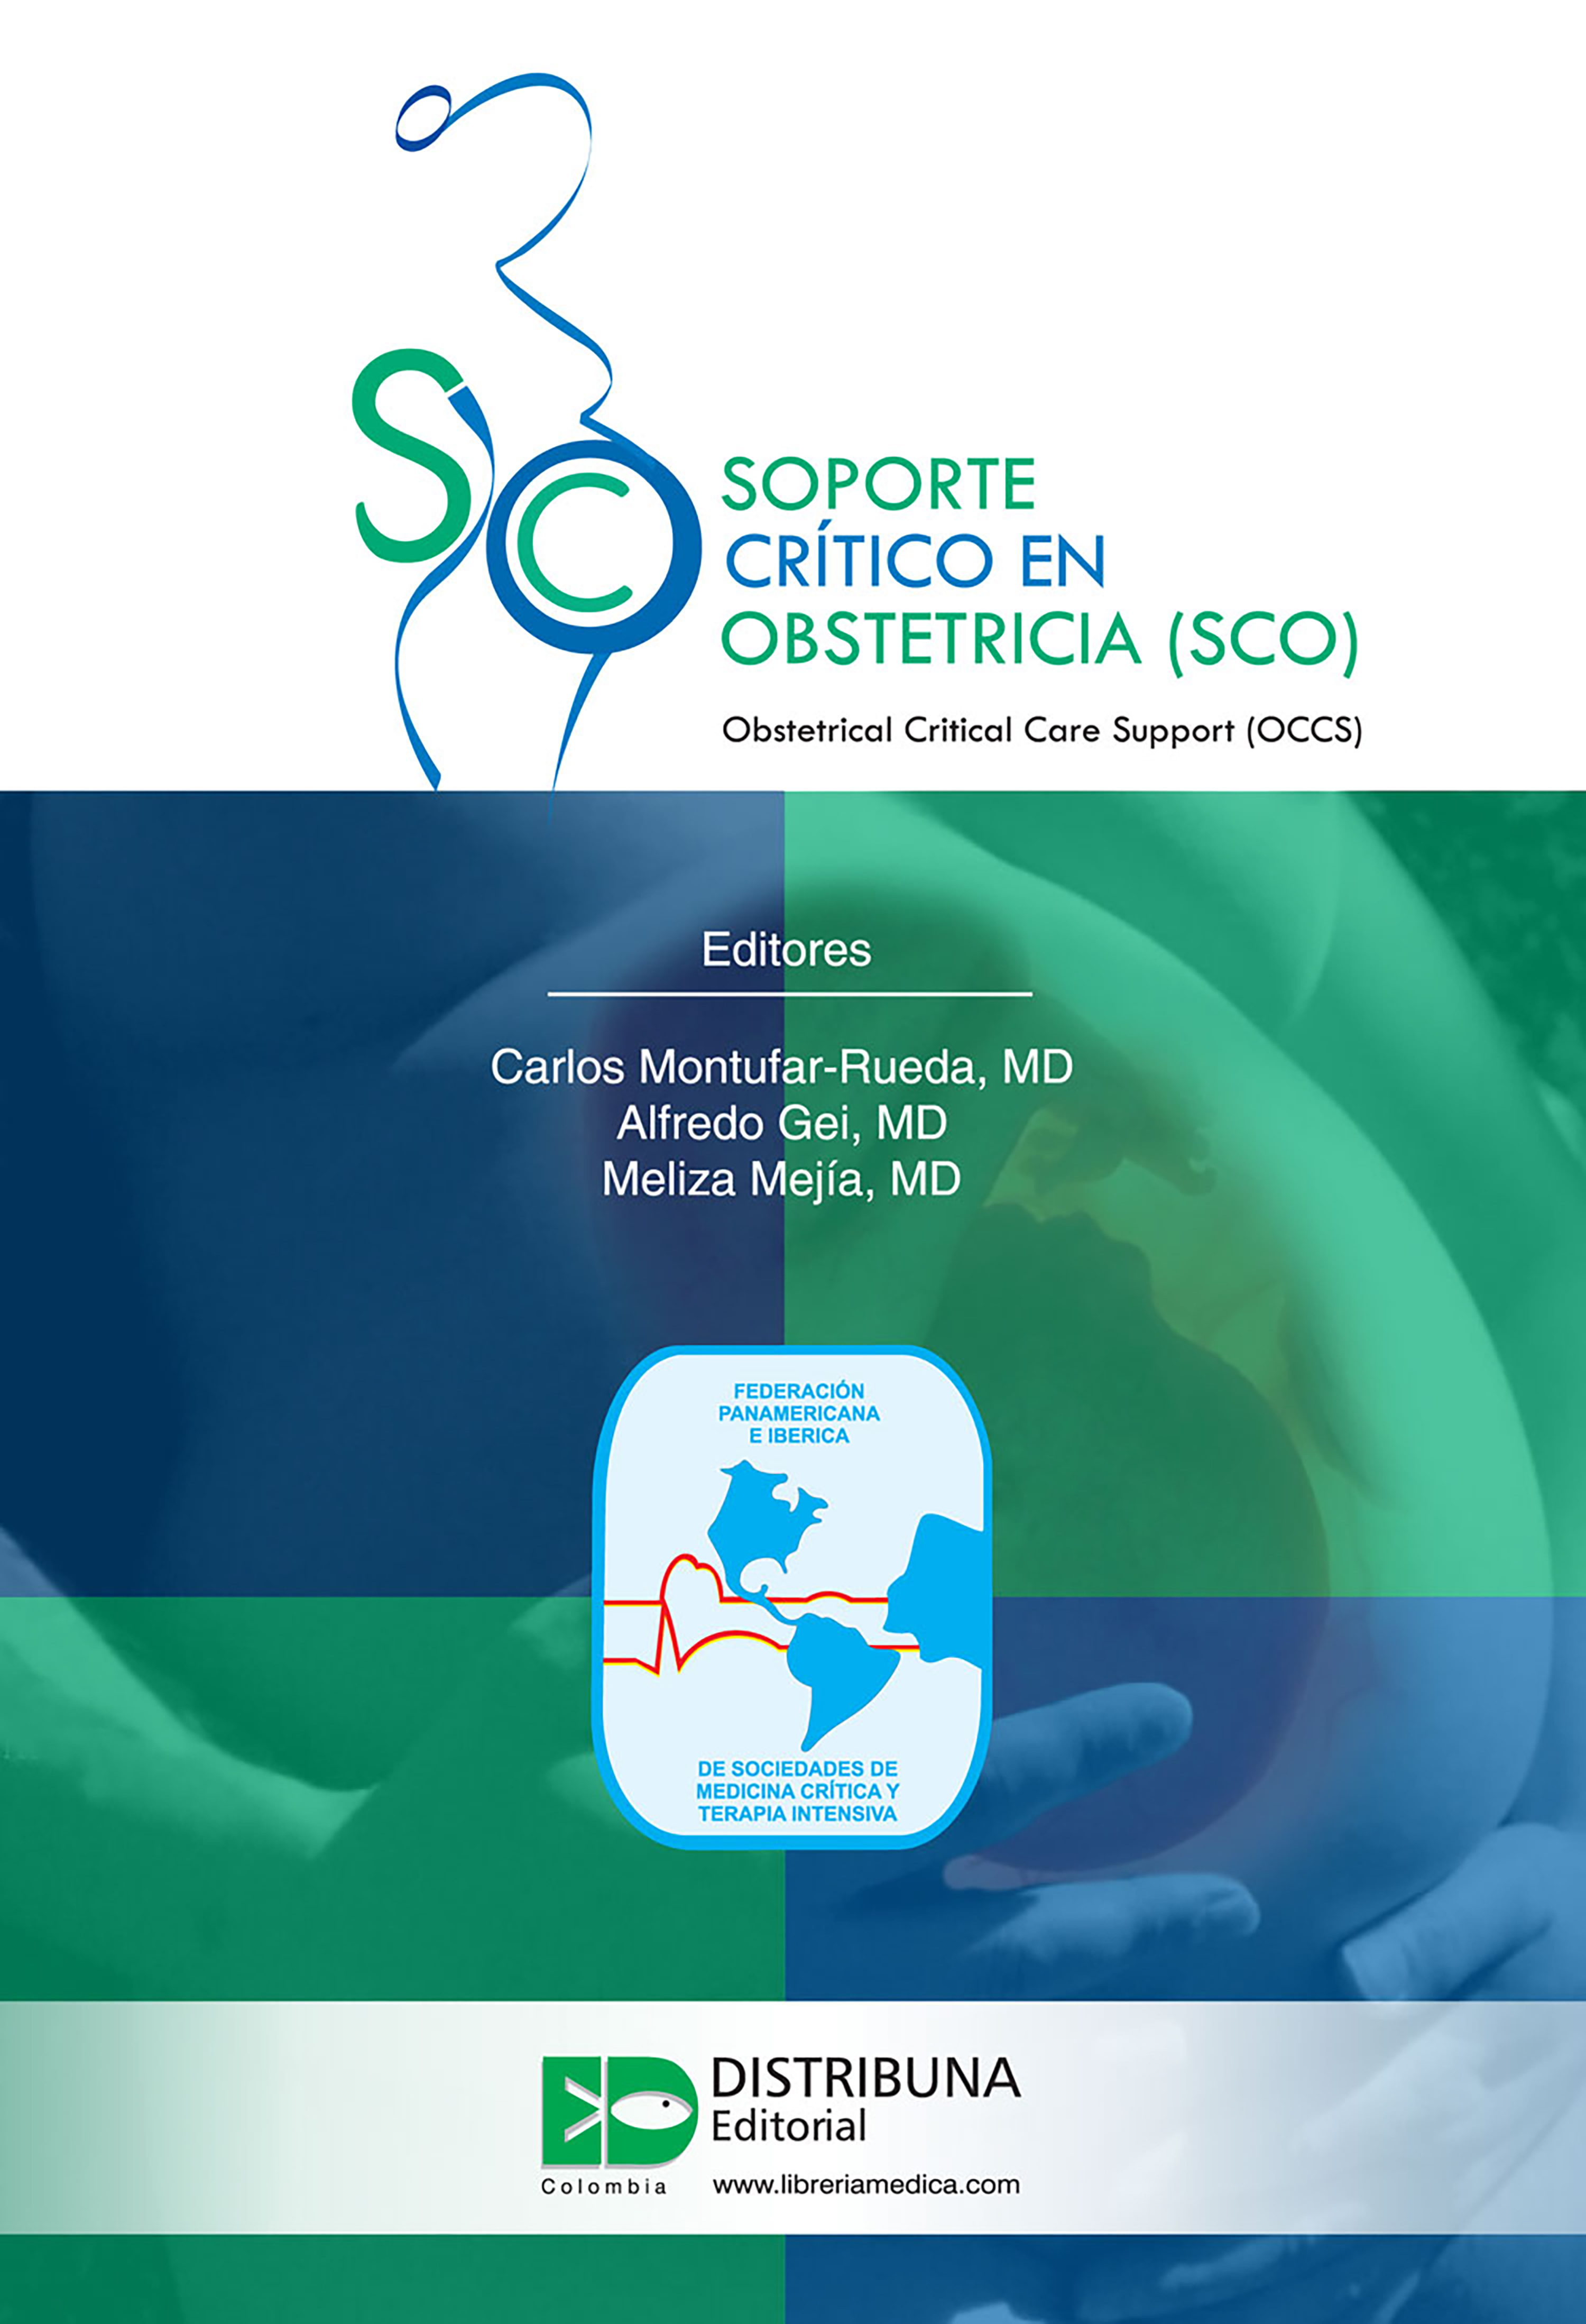 Carlos Montufar Rueda Soporte crítico en obstetricia (SCO)